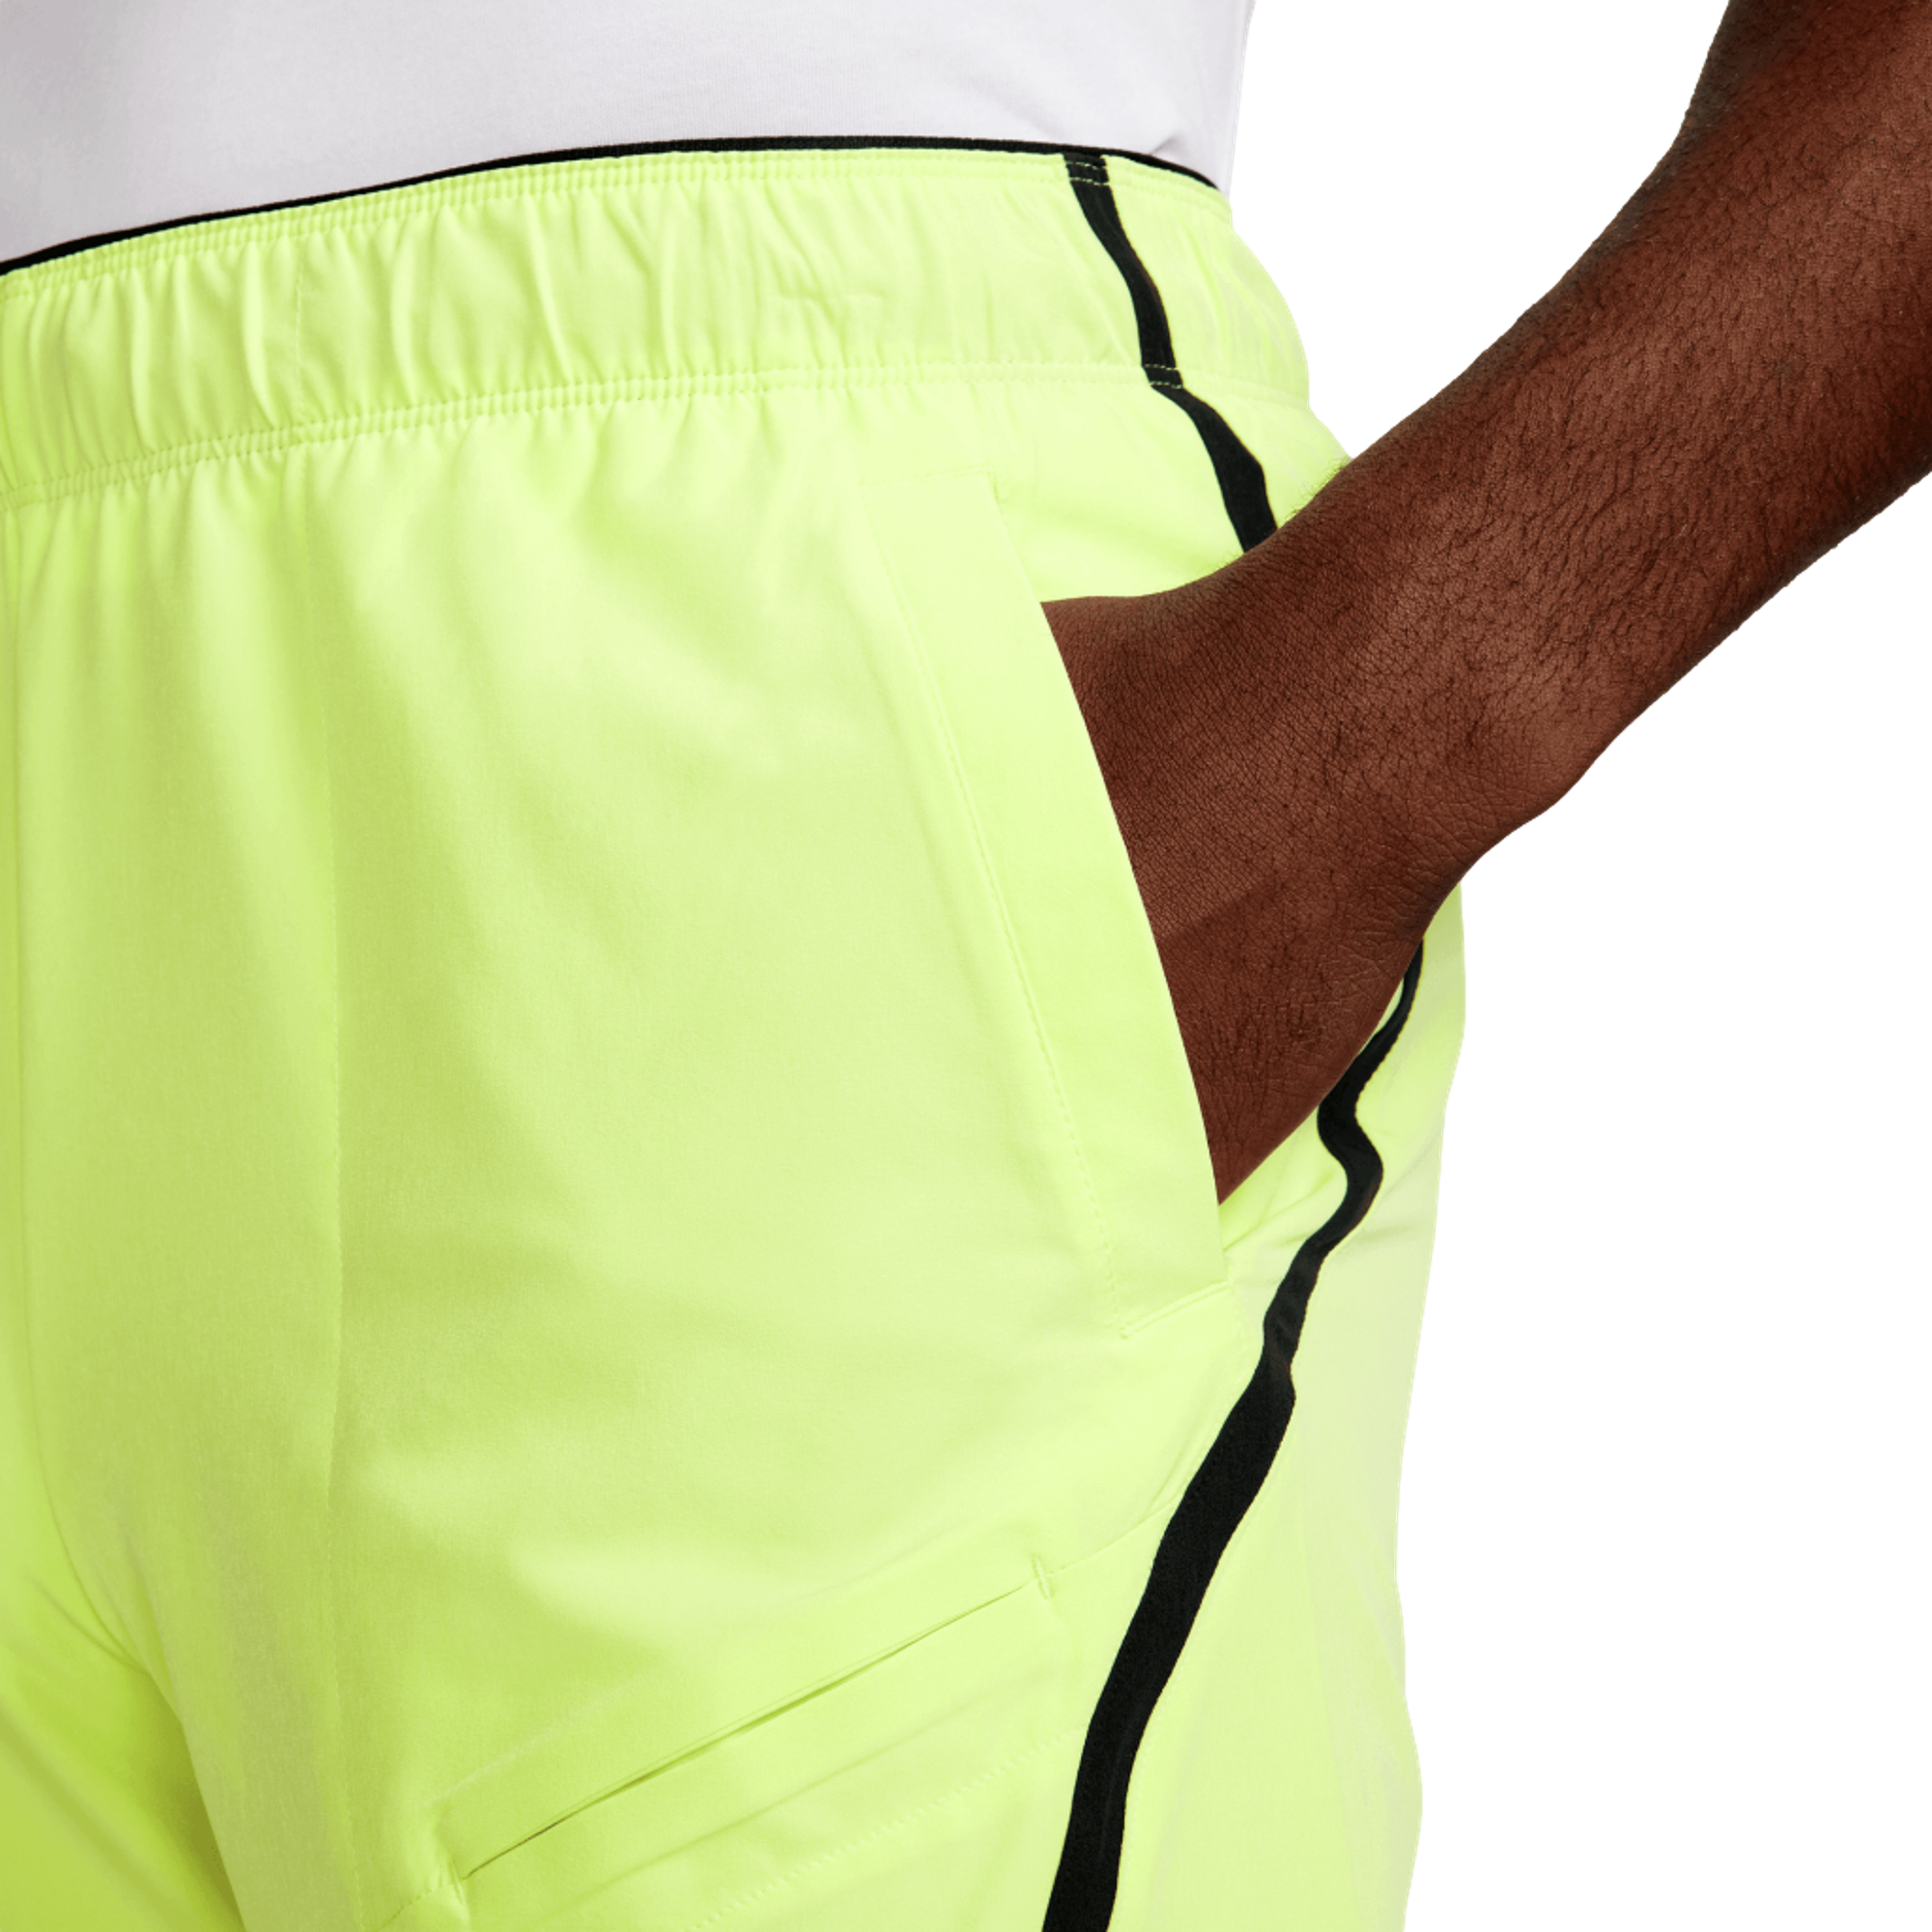 NikeCourt Advantage Dri-FIT 7" Men's Tennis Short